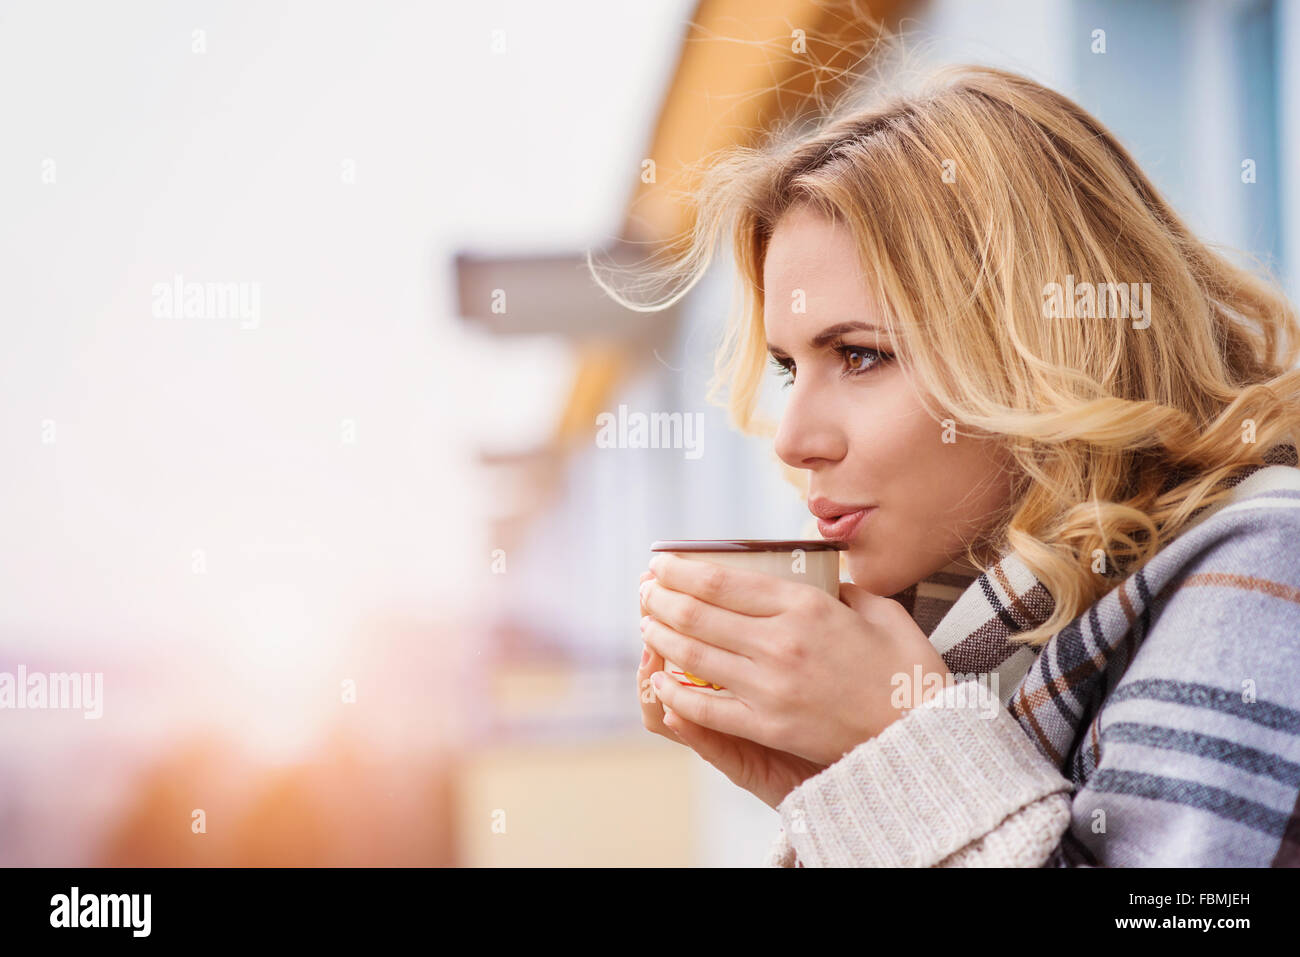 Mujer Joven Con Ropa Caliente En Invierno Frío Beber Café Para Ir Foto de  archivo - Imagen de gente, sonrisa: 270573996